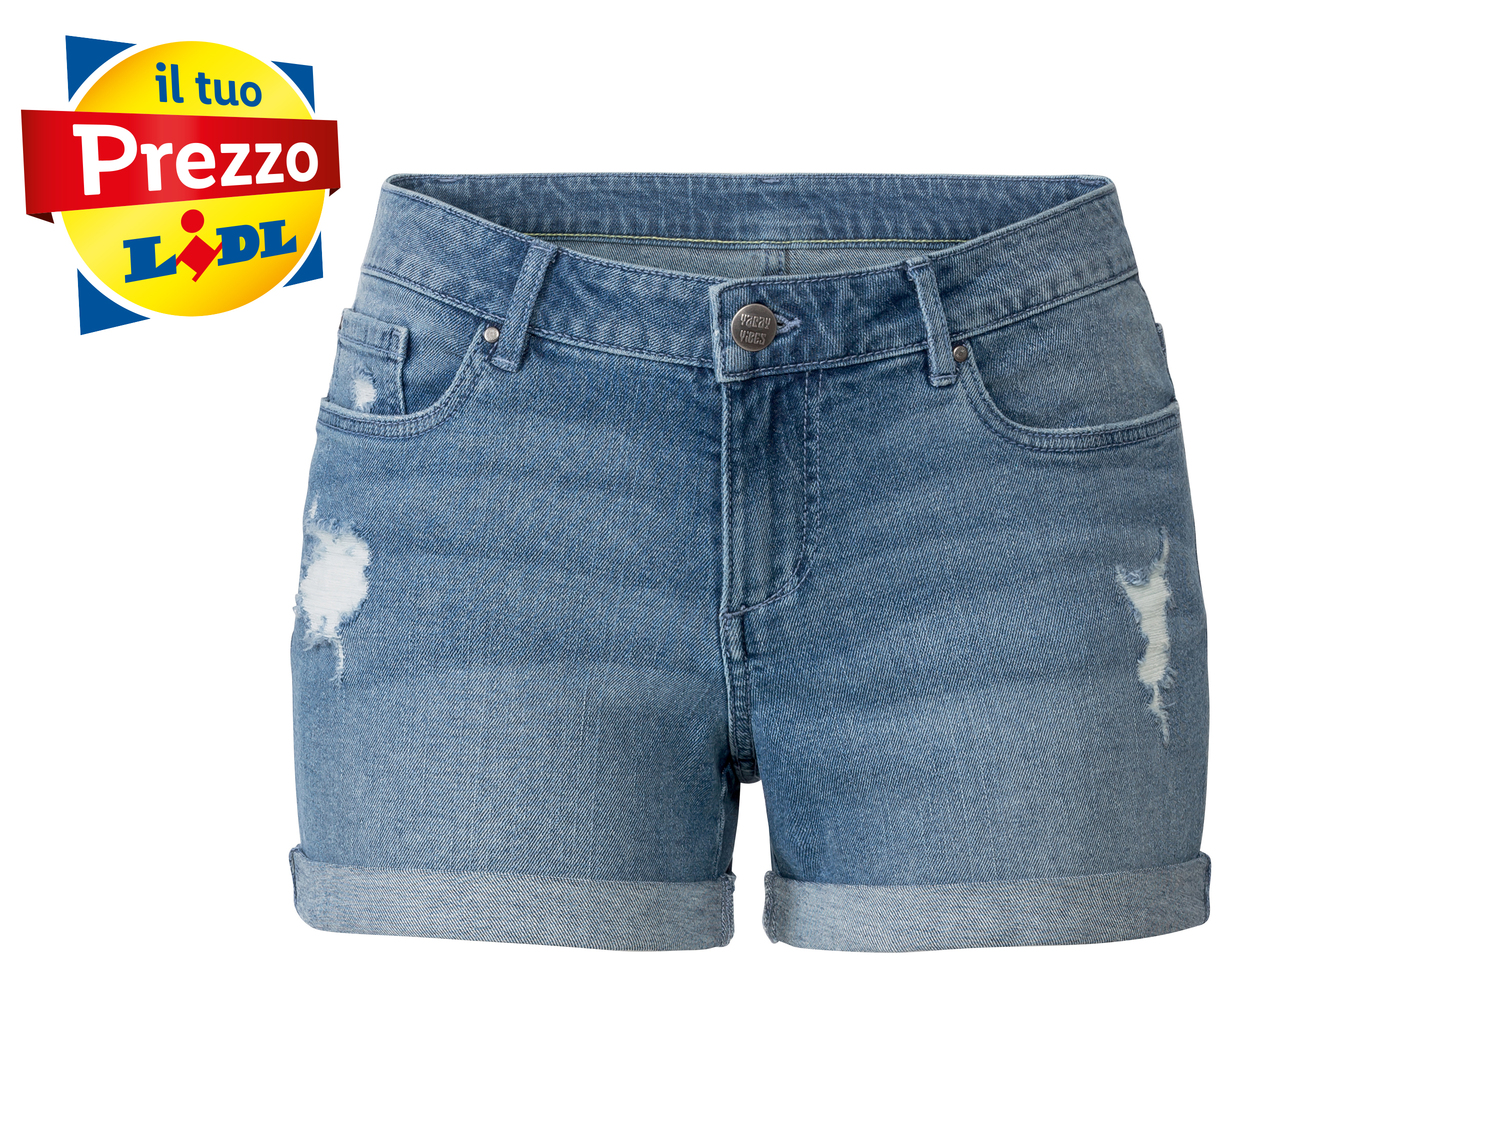 Shorts in jeans da donna Esmara, prezzo 6.99 &#8364; 
Misure: 38-48
Taglie disponibili

Caratteristiche

- ...